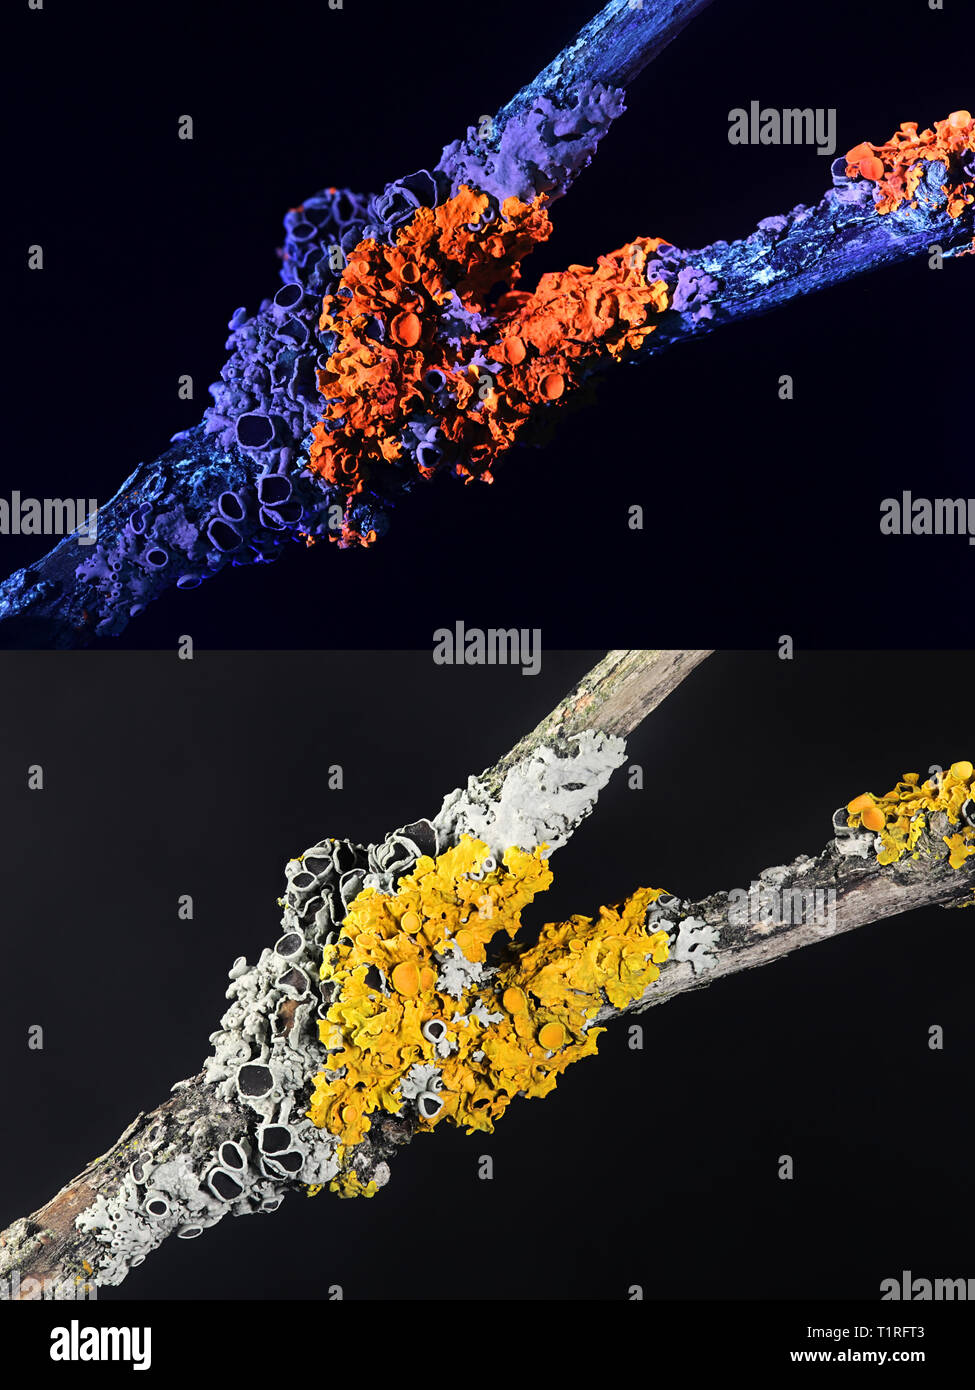 Gemeinsame orange Ufer flechten und hoary Rosette flechten fotografiert im ultravioletten Licht (365 nm). Unteres Bild im normalen sichtbares Licht fotografiert. Stockfoto